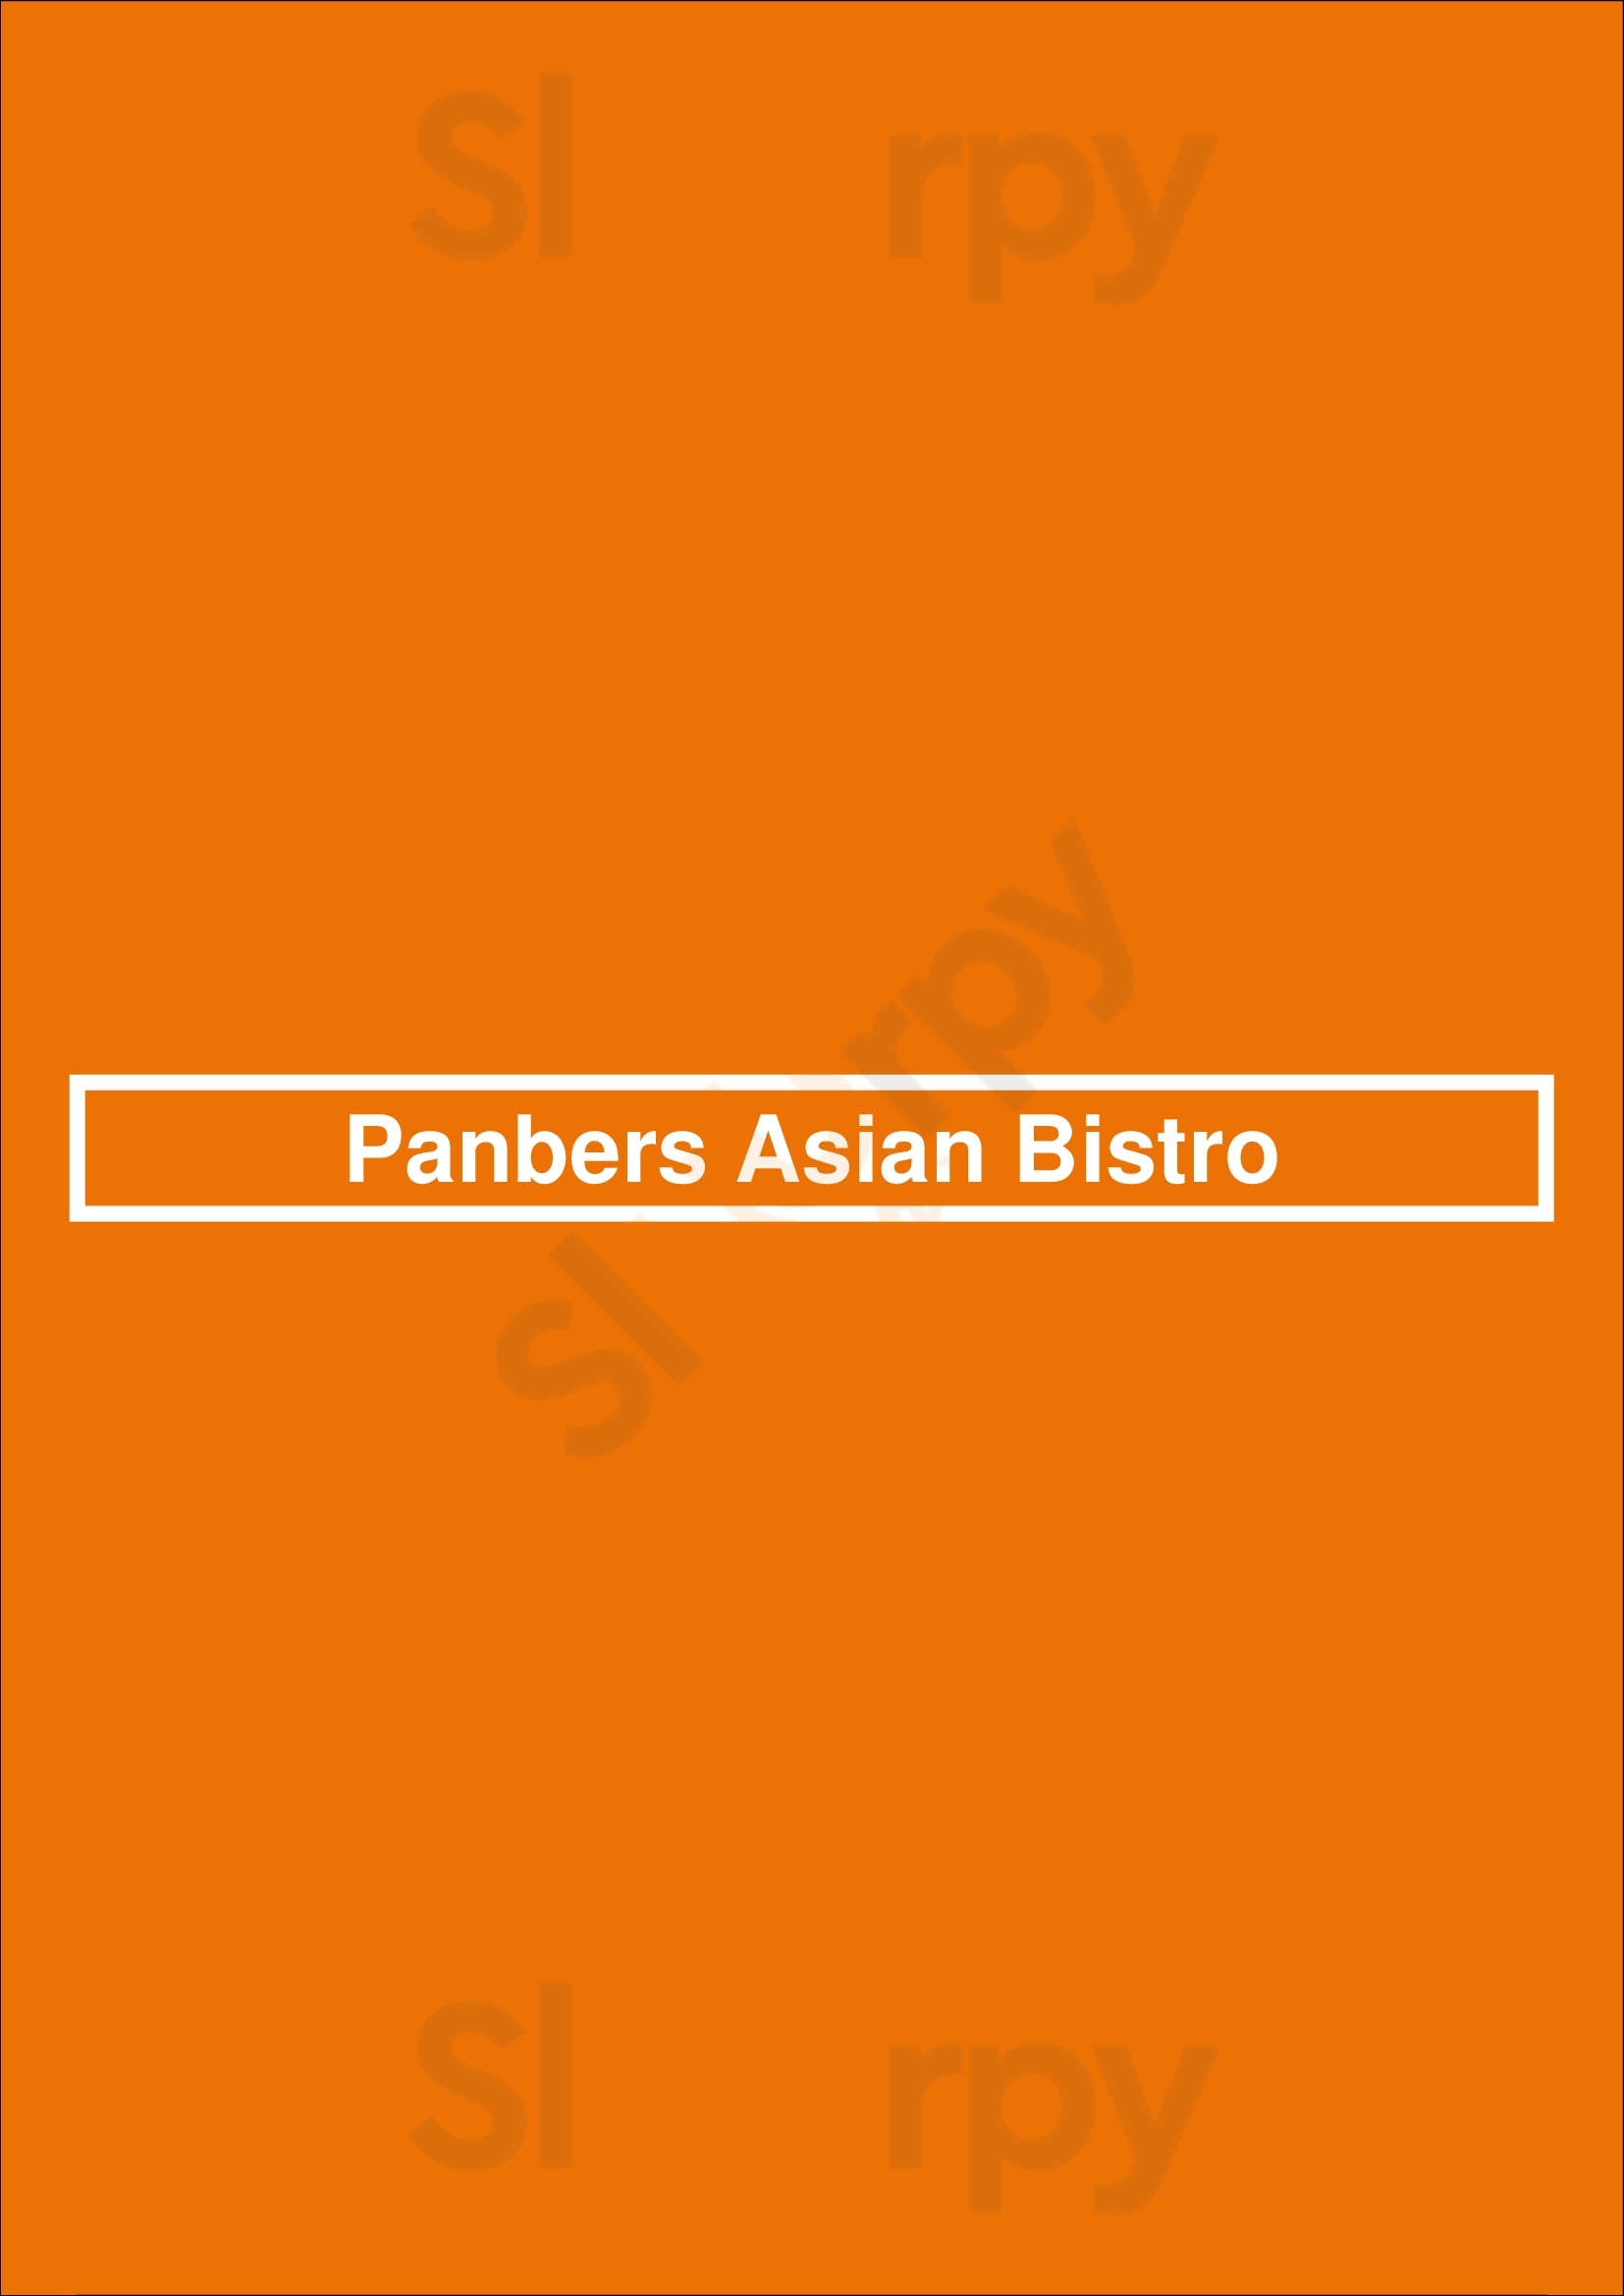 Panbers Asian Bistro Colorado Springs Menu - 1